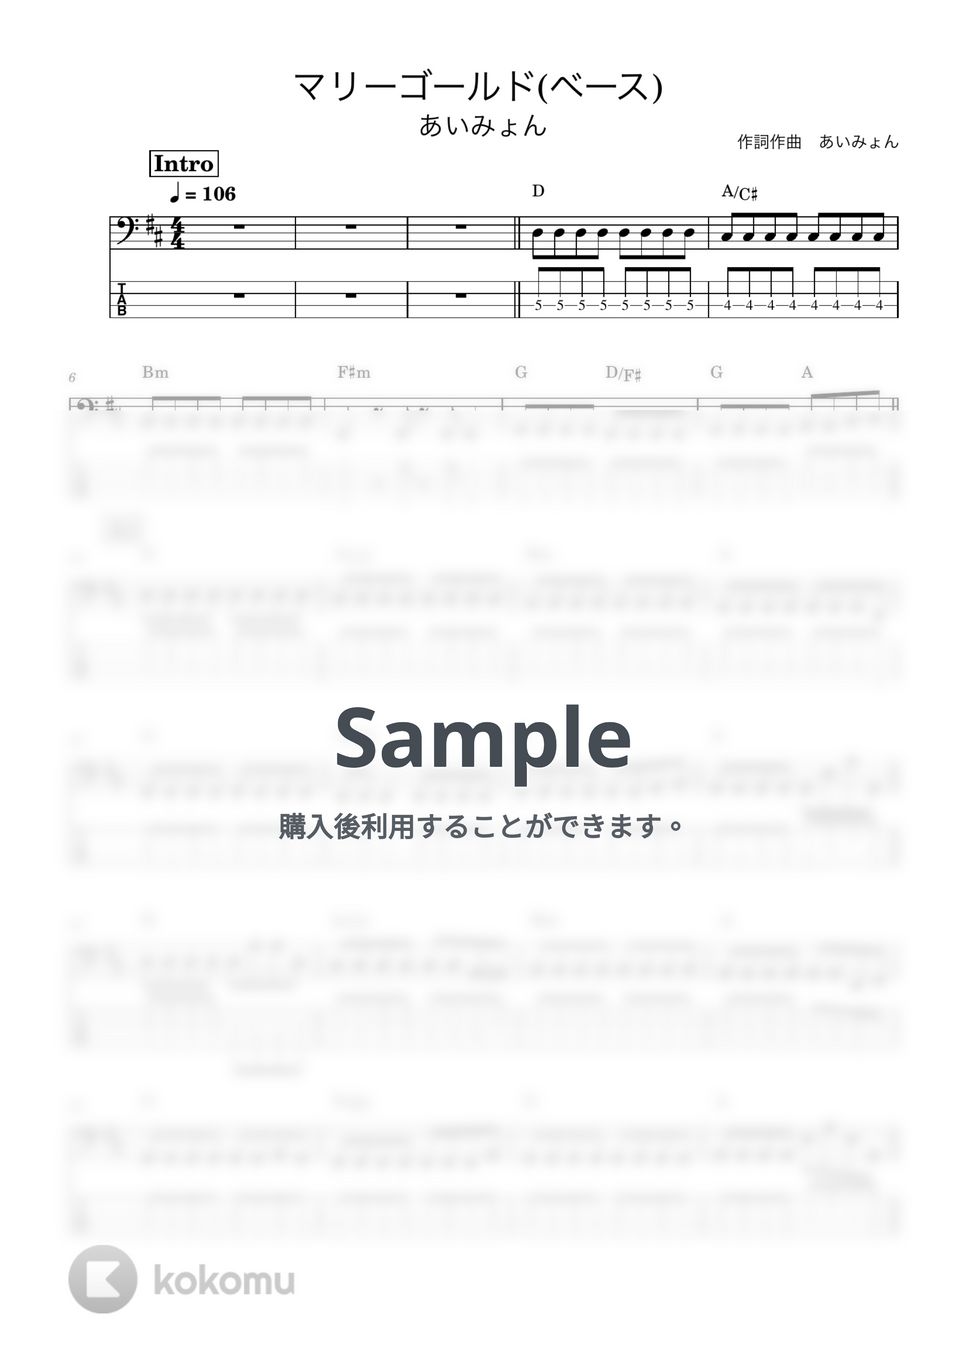 あいみょん - マリーゴールド (ベース譜) by Kodai Hojo